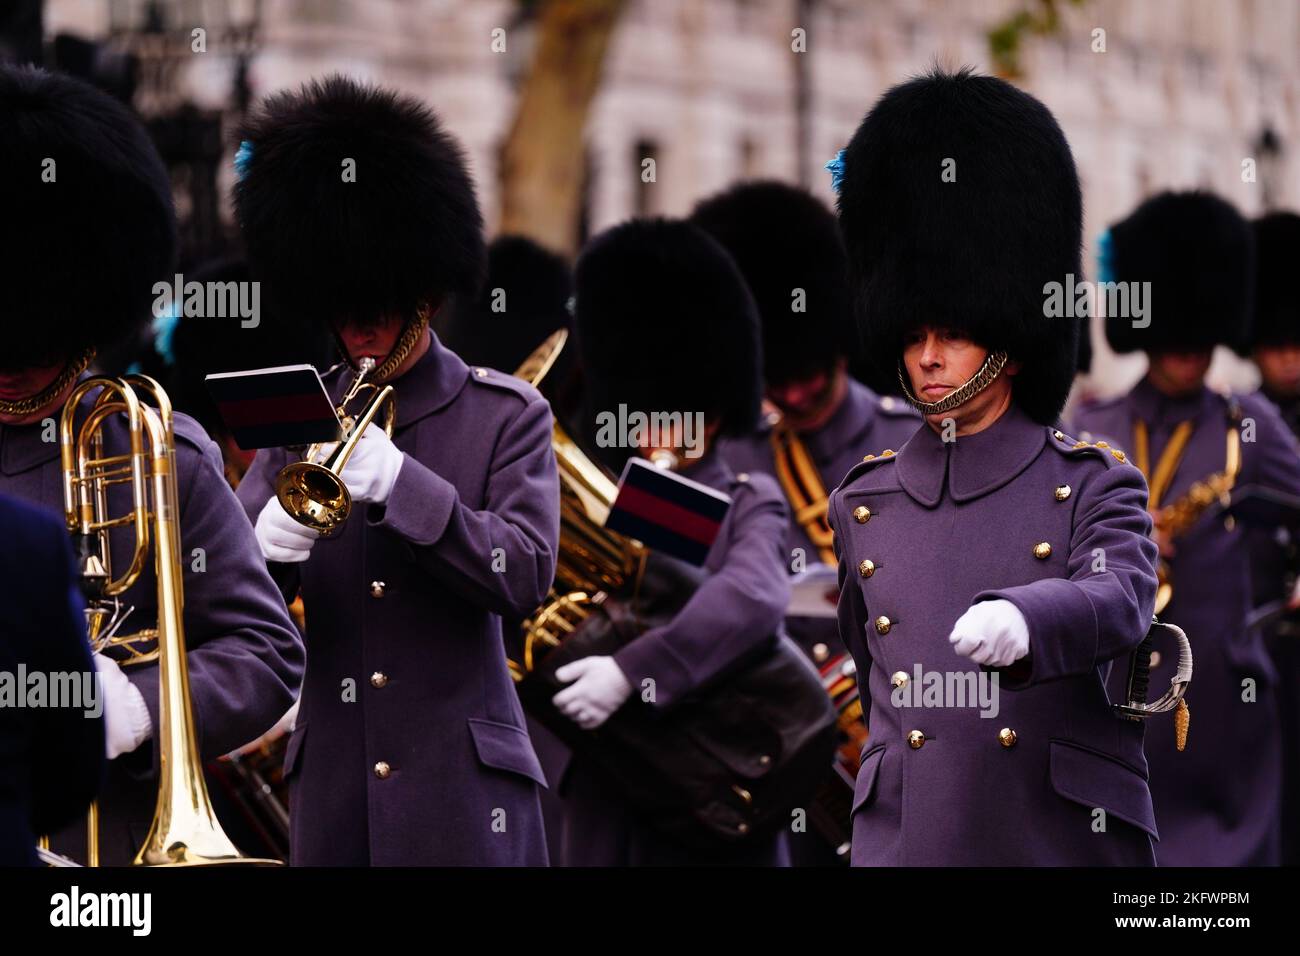 Die jährliche Parade der Vereinigung jüdischer Ex-Soldaten und Frauen im Cenotaph in Whitehall, London. Bilddatum: Sonntag, 20. November 2022. Stockfoto